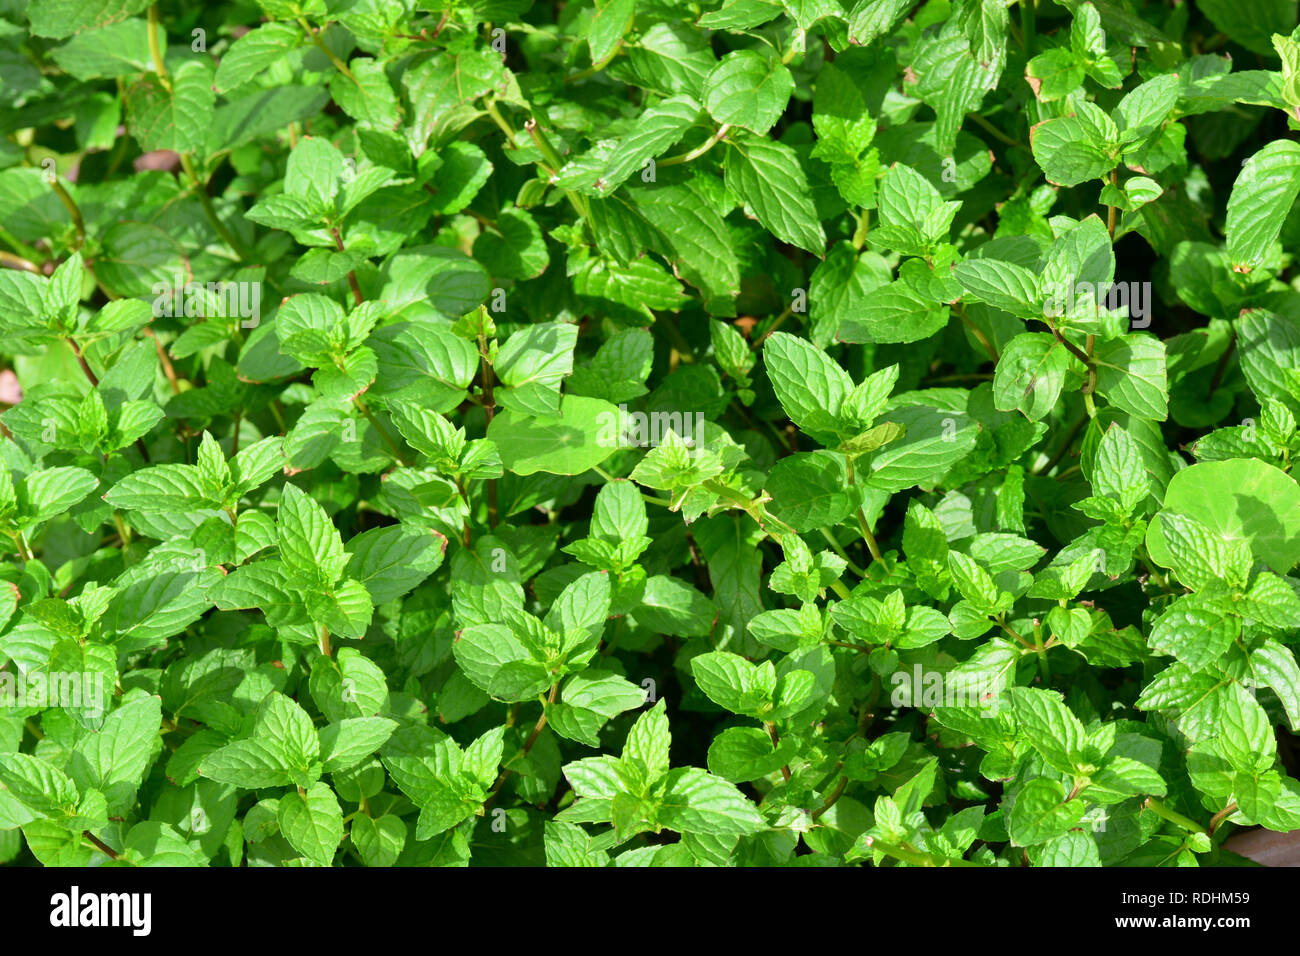 Die grüne Minze, oder Speer Minze (Mentha Spicata) (auch bekannt als Mentha viridis) ist eine Pflanzenart aus der Gattung der Minze native zu viel von Europa und Asien Stockfoto